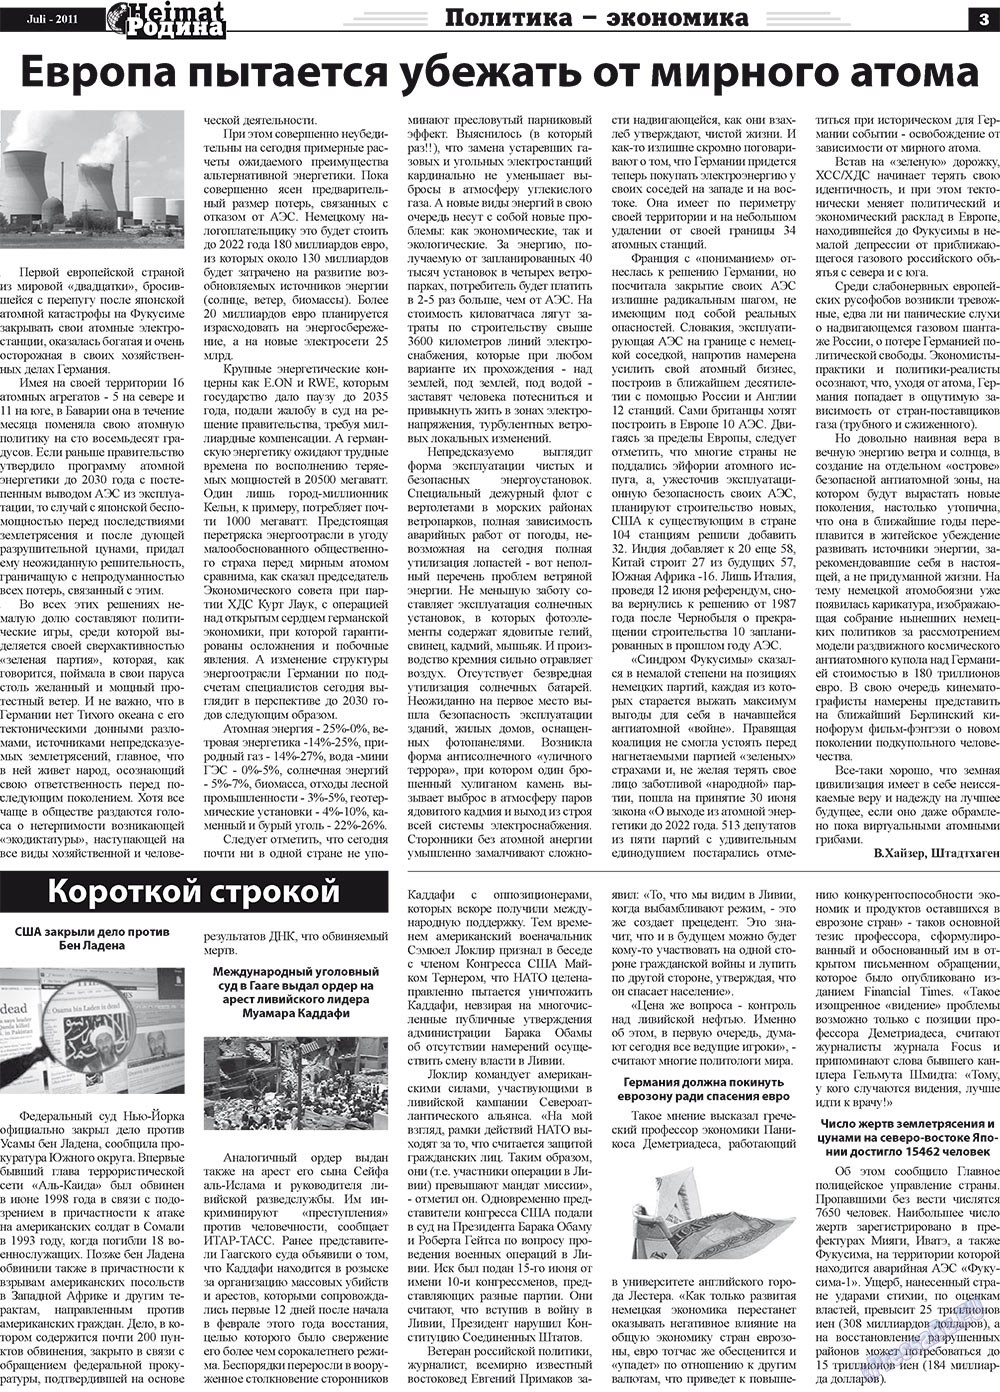 Heimat-Родина (газета). 2011 год, номер 7, стр. 3